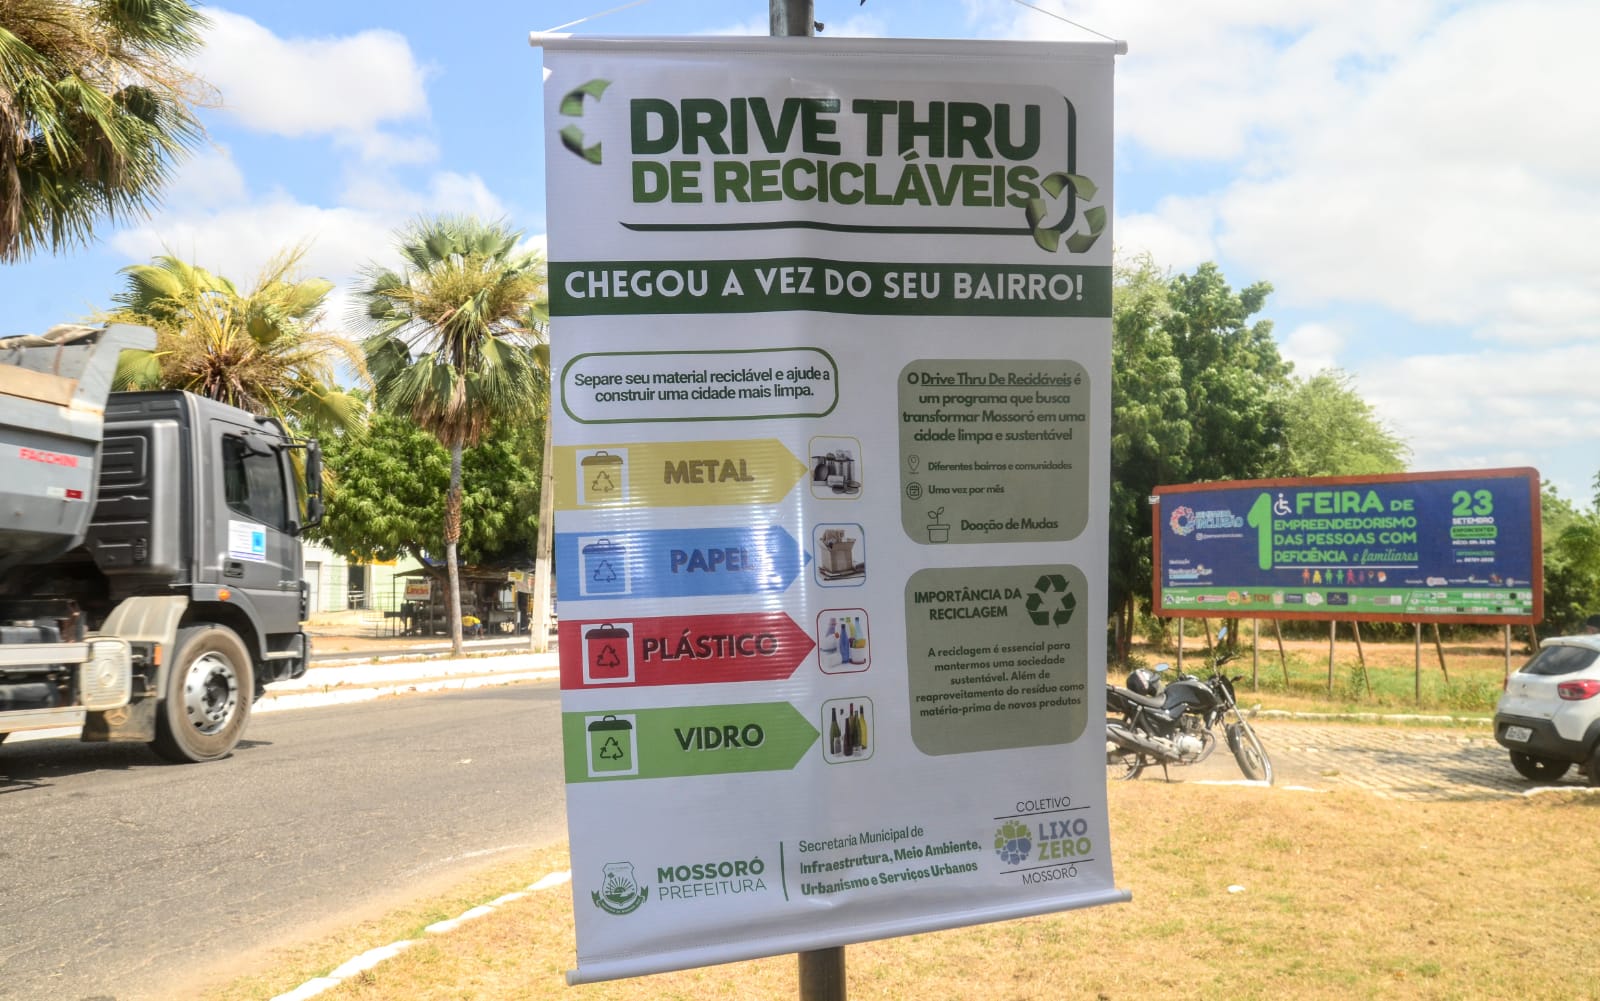 "Mossoró Limpa": Prefeitura realiza drive thru de recicláveis no bairro Abolição II